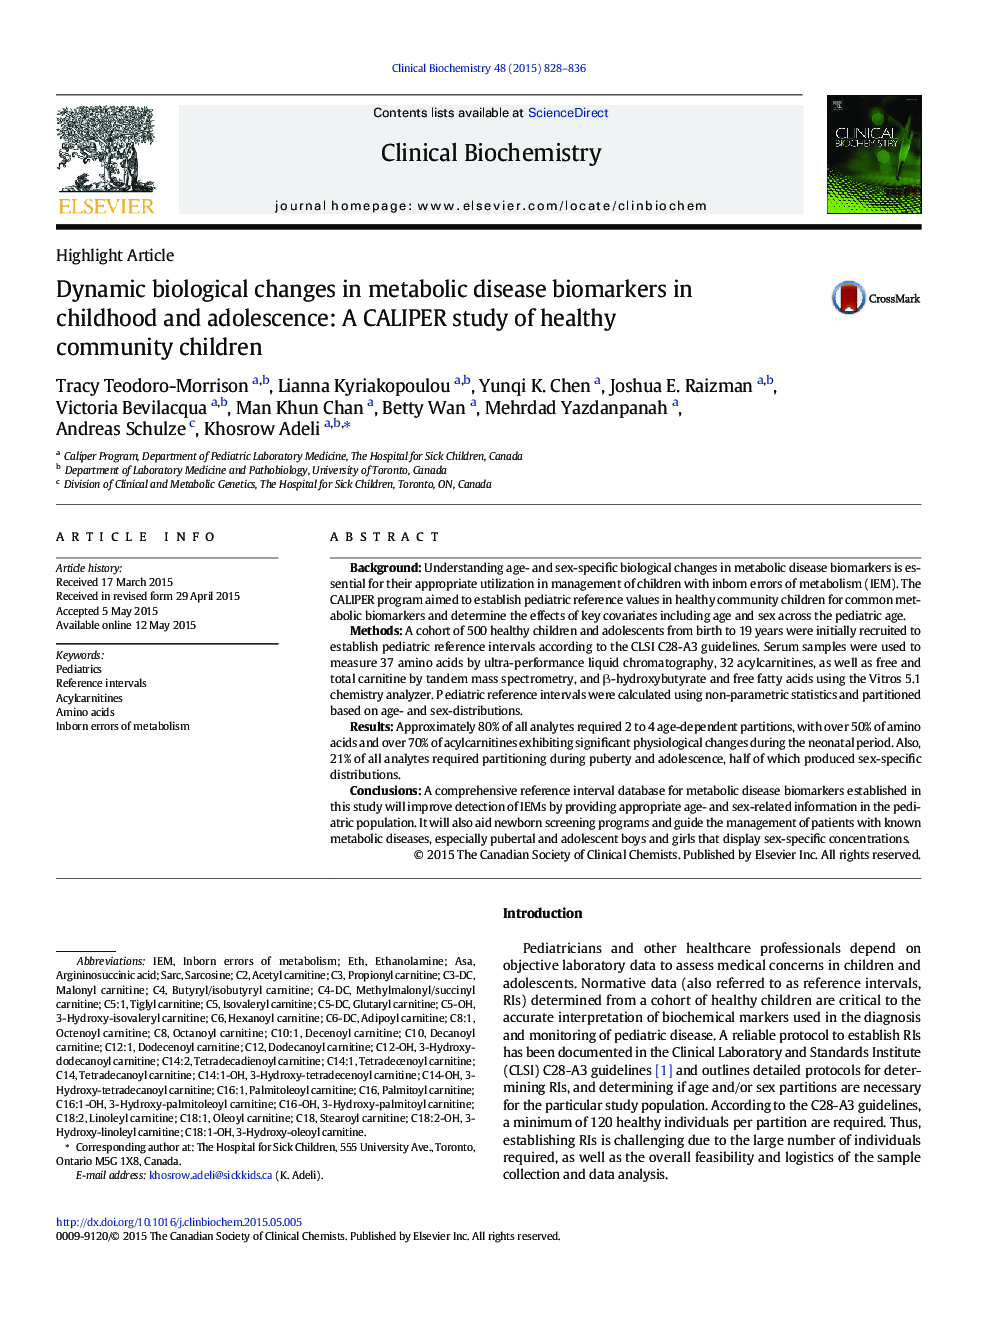 تغییرات بیولوژیکی پویا در بیومارکرهای بیماری متابولیک در دوران کودکی و نوجوانی: مطالعه کالیرر کودکان سالم جامعه 